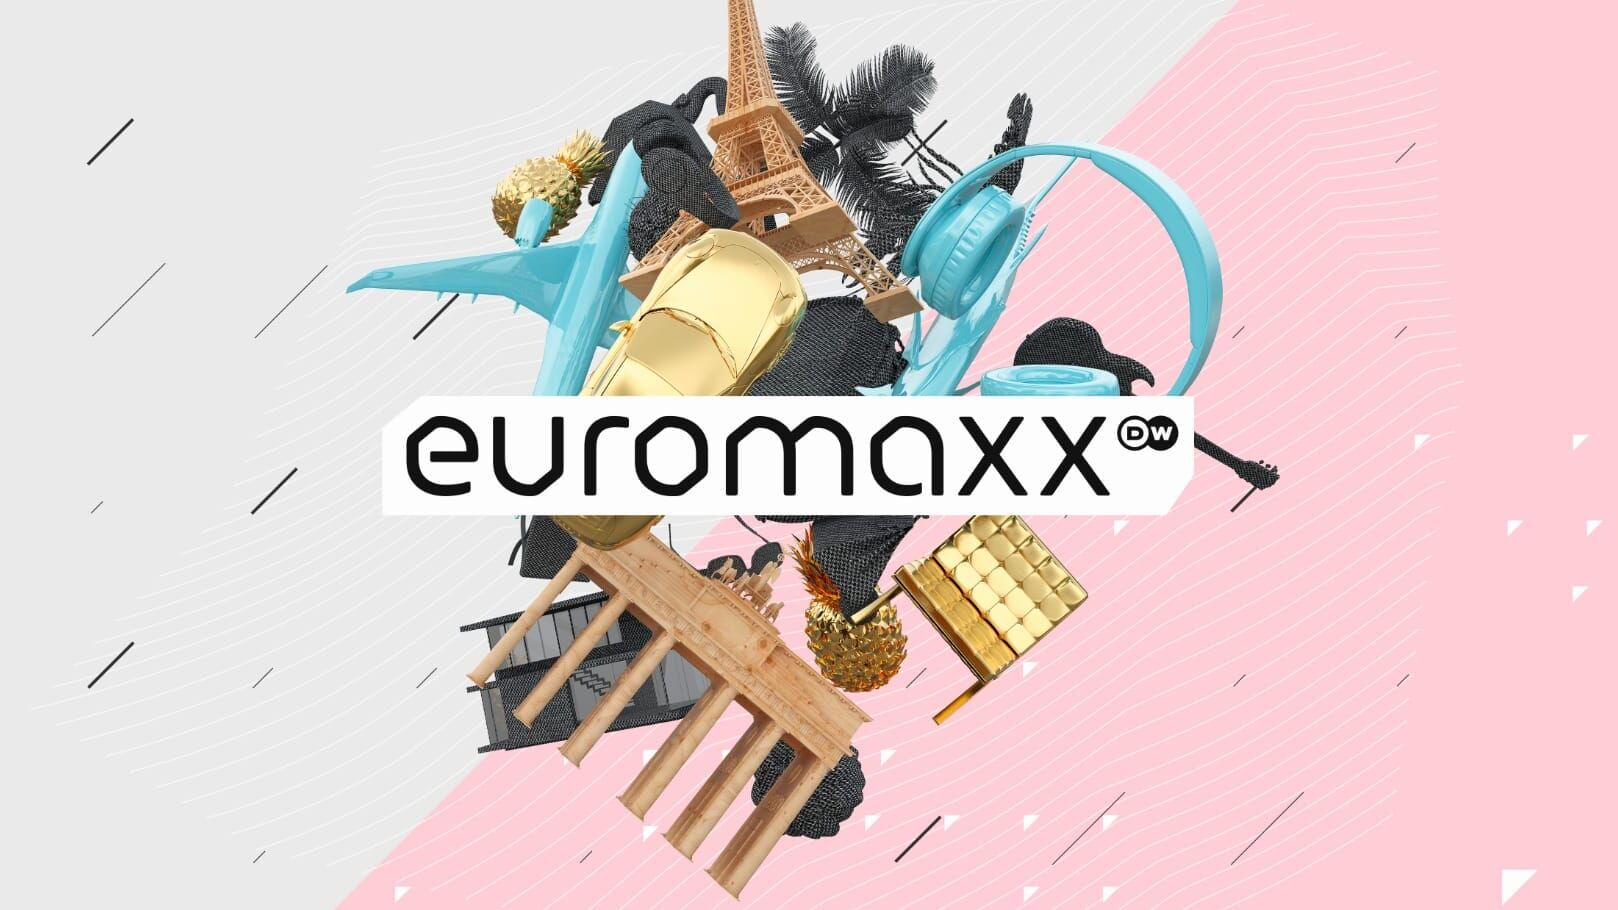 Euromaxx